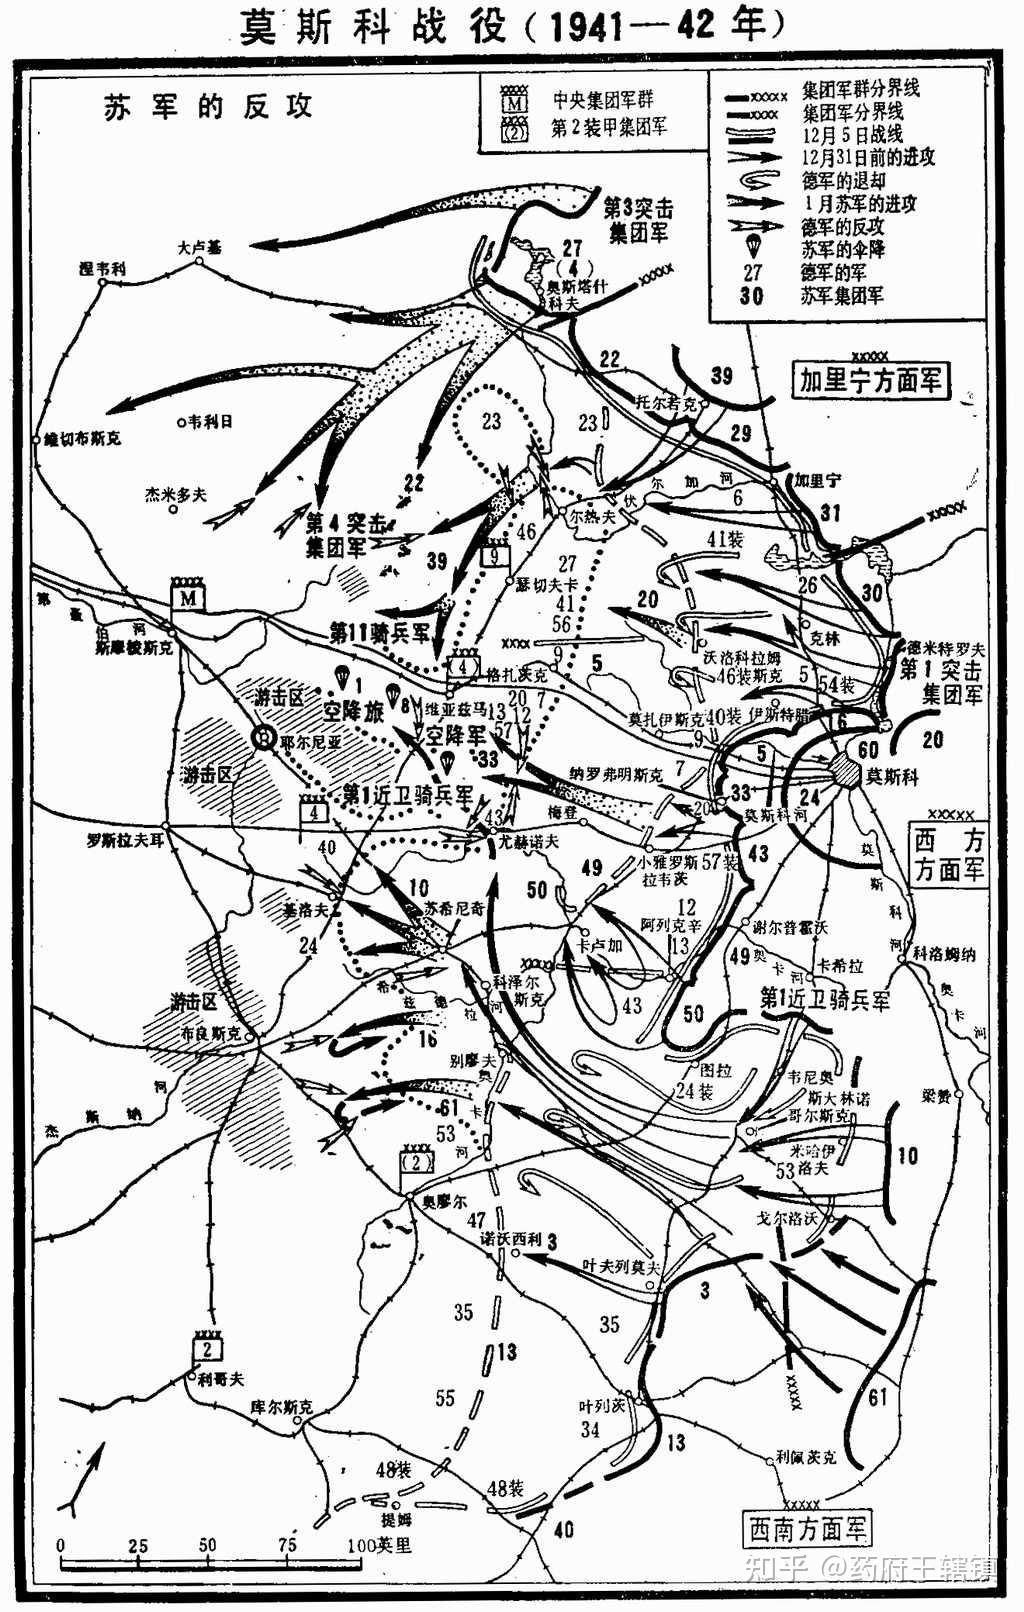 莫斯科战役德国篇强大的中央集团军群